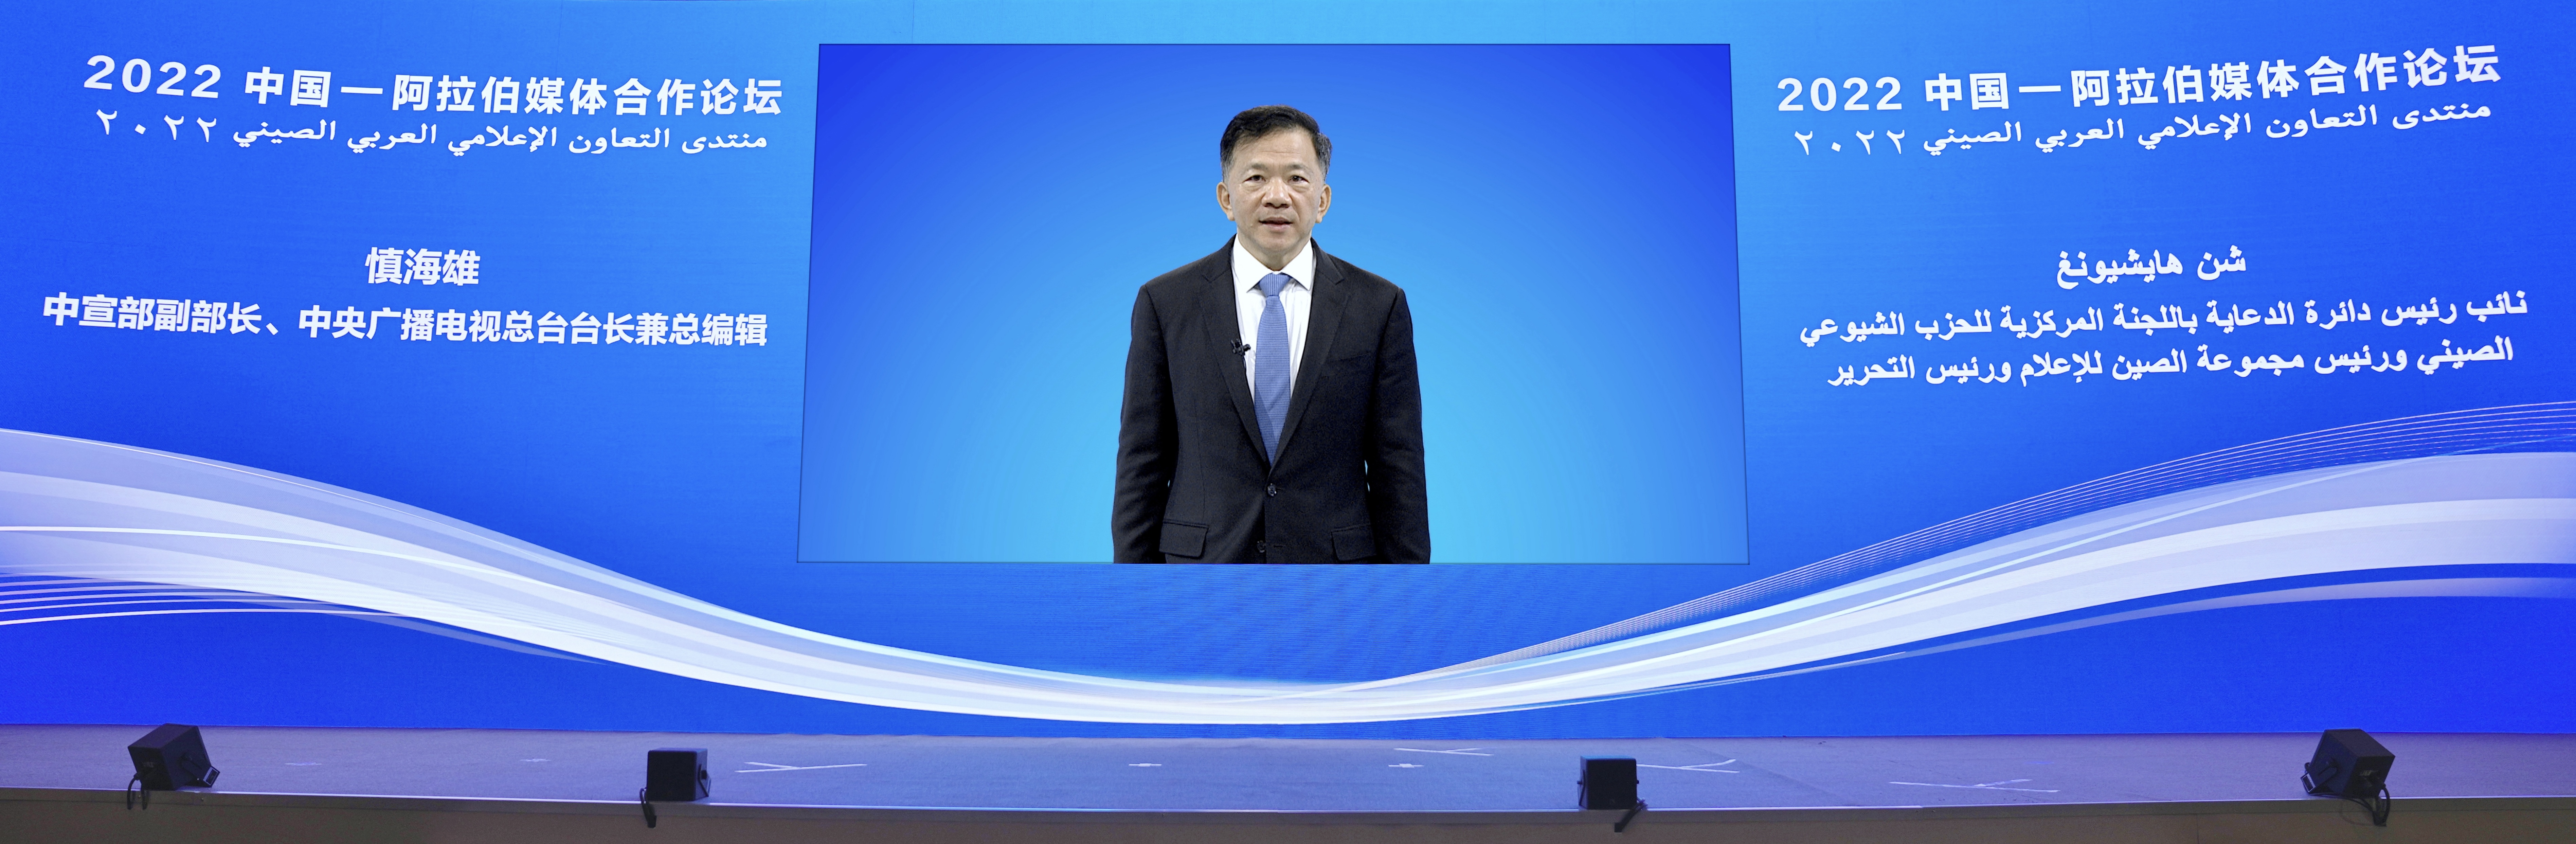 Shen Haixiong, president of CMG. /CMG